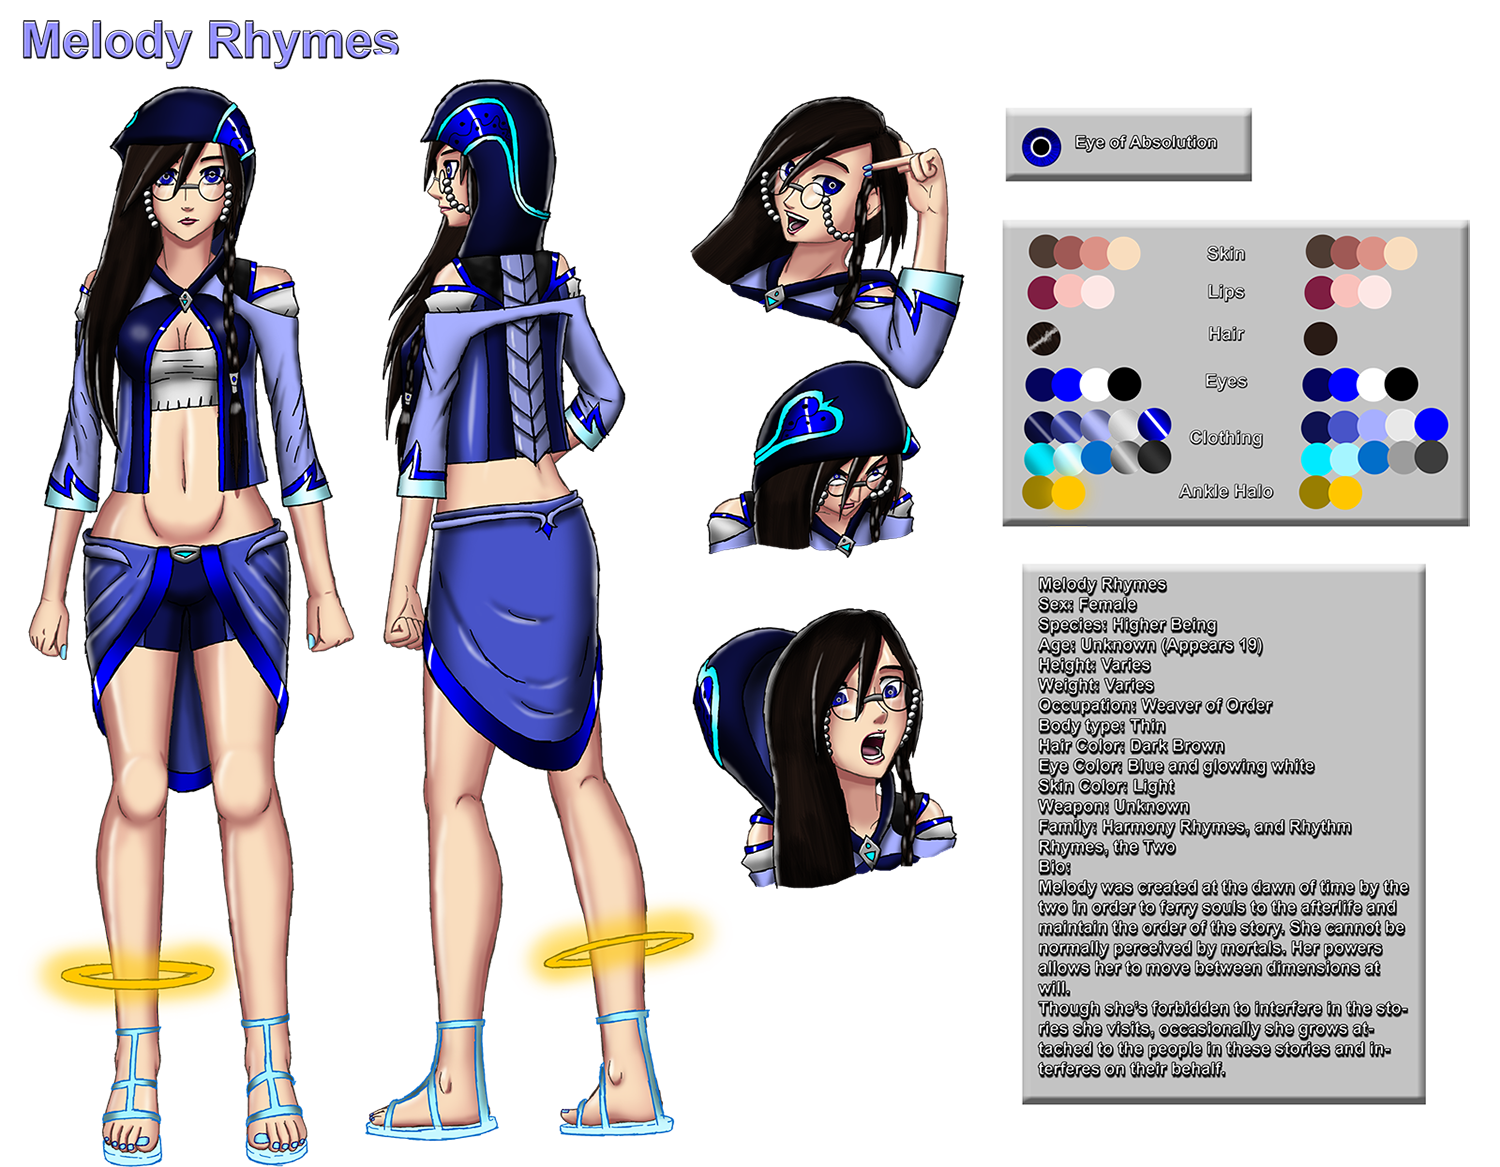 Melody Rhymes Character Sheet by NIX